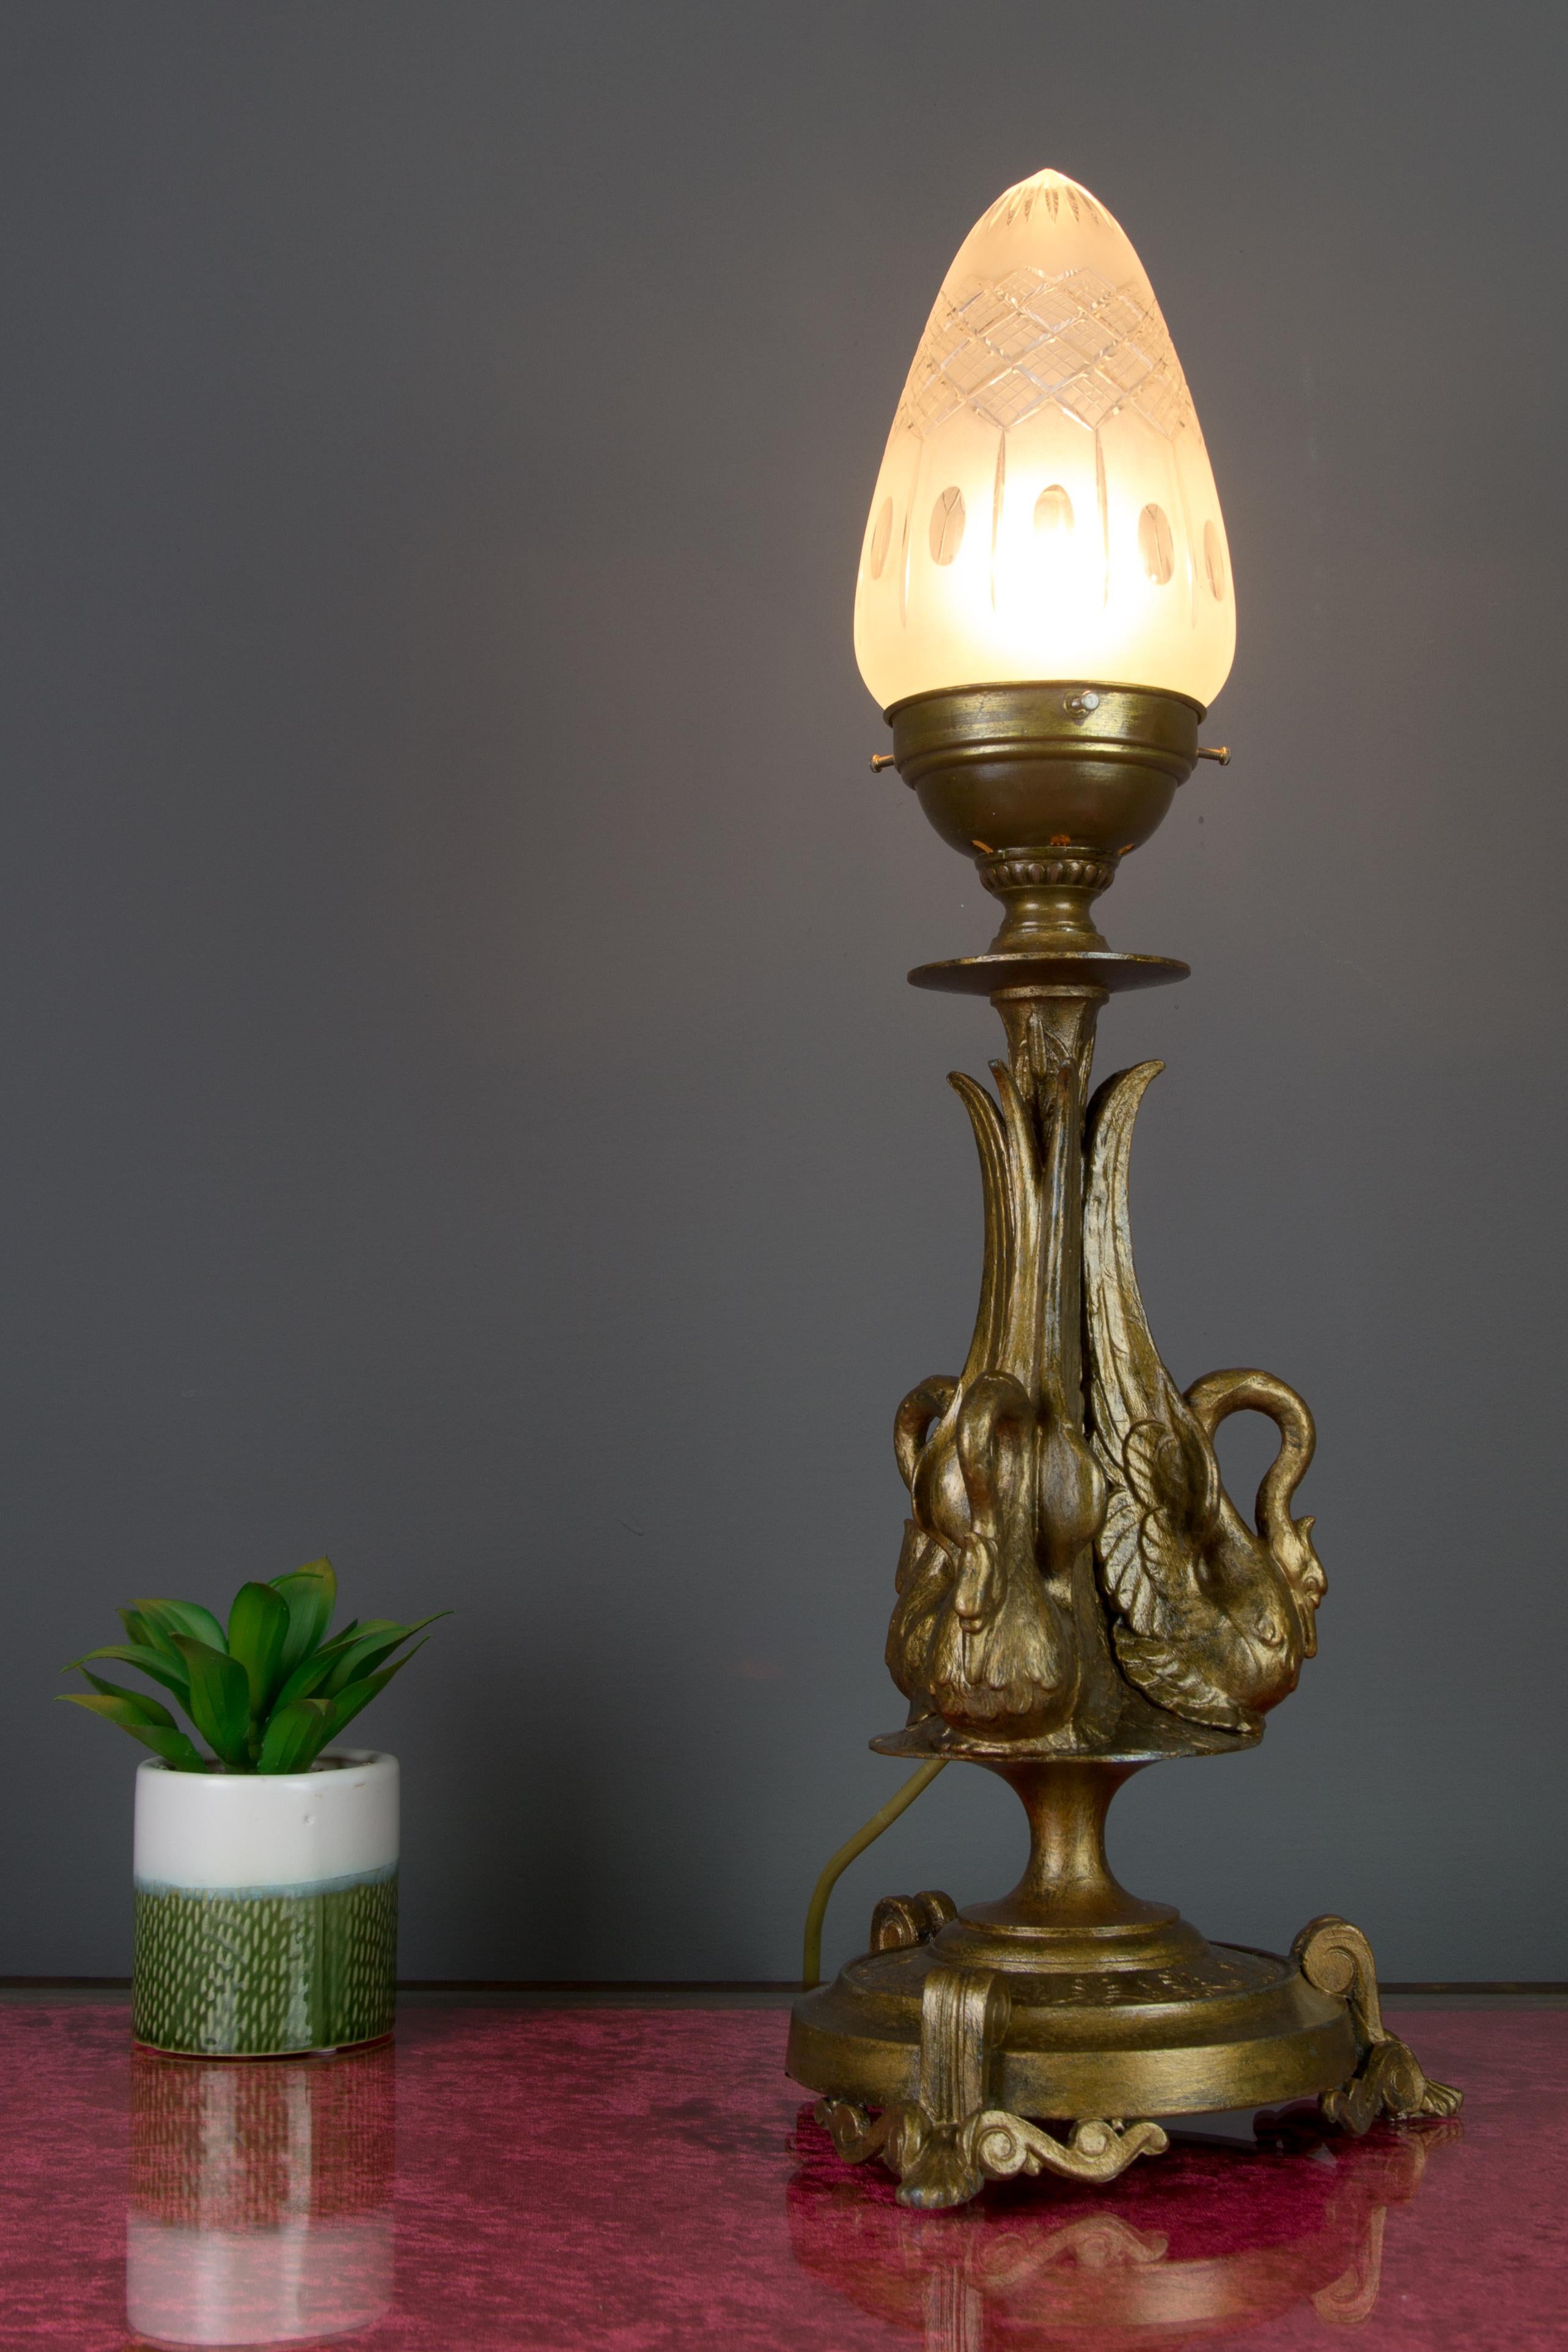 Die formschöne Tischlampe im französischen Empire-Stil, eine Petroleumlampe mit Stromanschluss, hat einen bronzefarbenen Zinnkorpus, der mit drei eleganten Schwanenfiguren verziert ist. Eine Fassung für Glühbirnen der Größe E27 (E26). In die USA